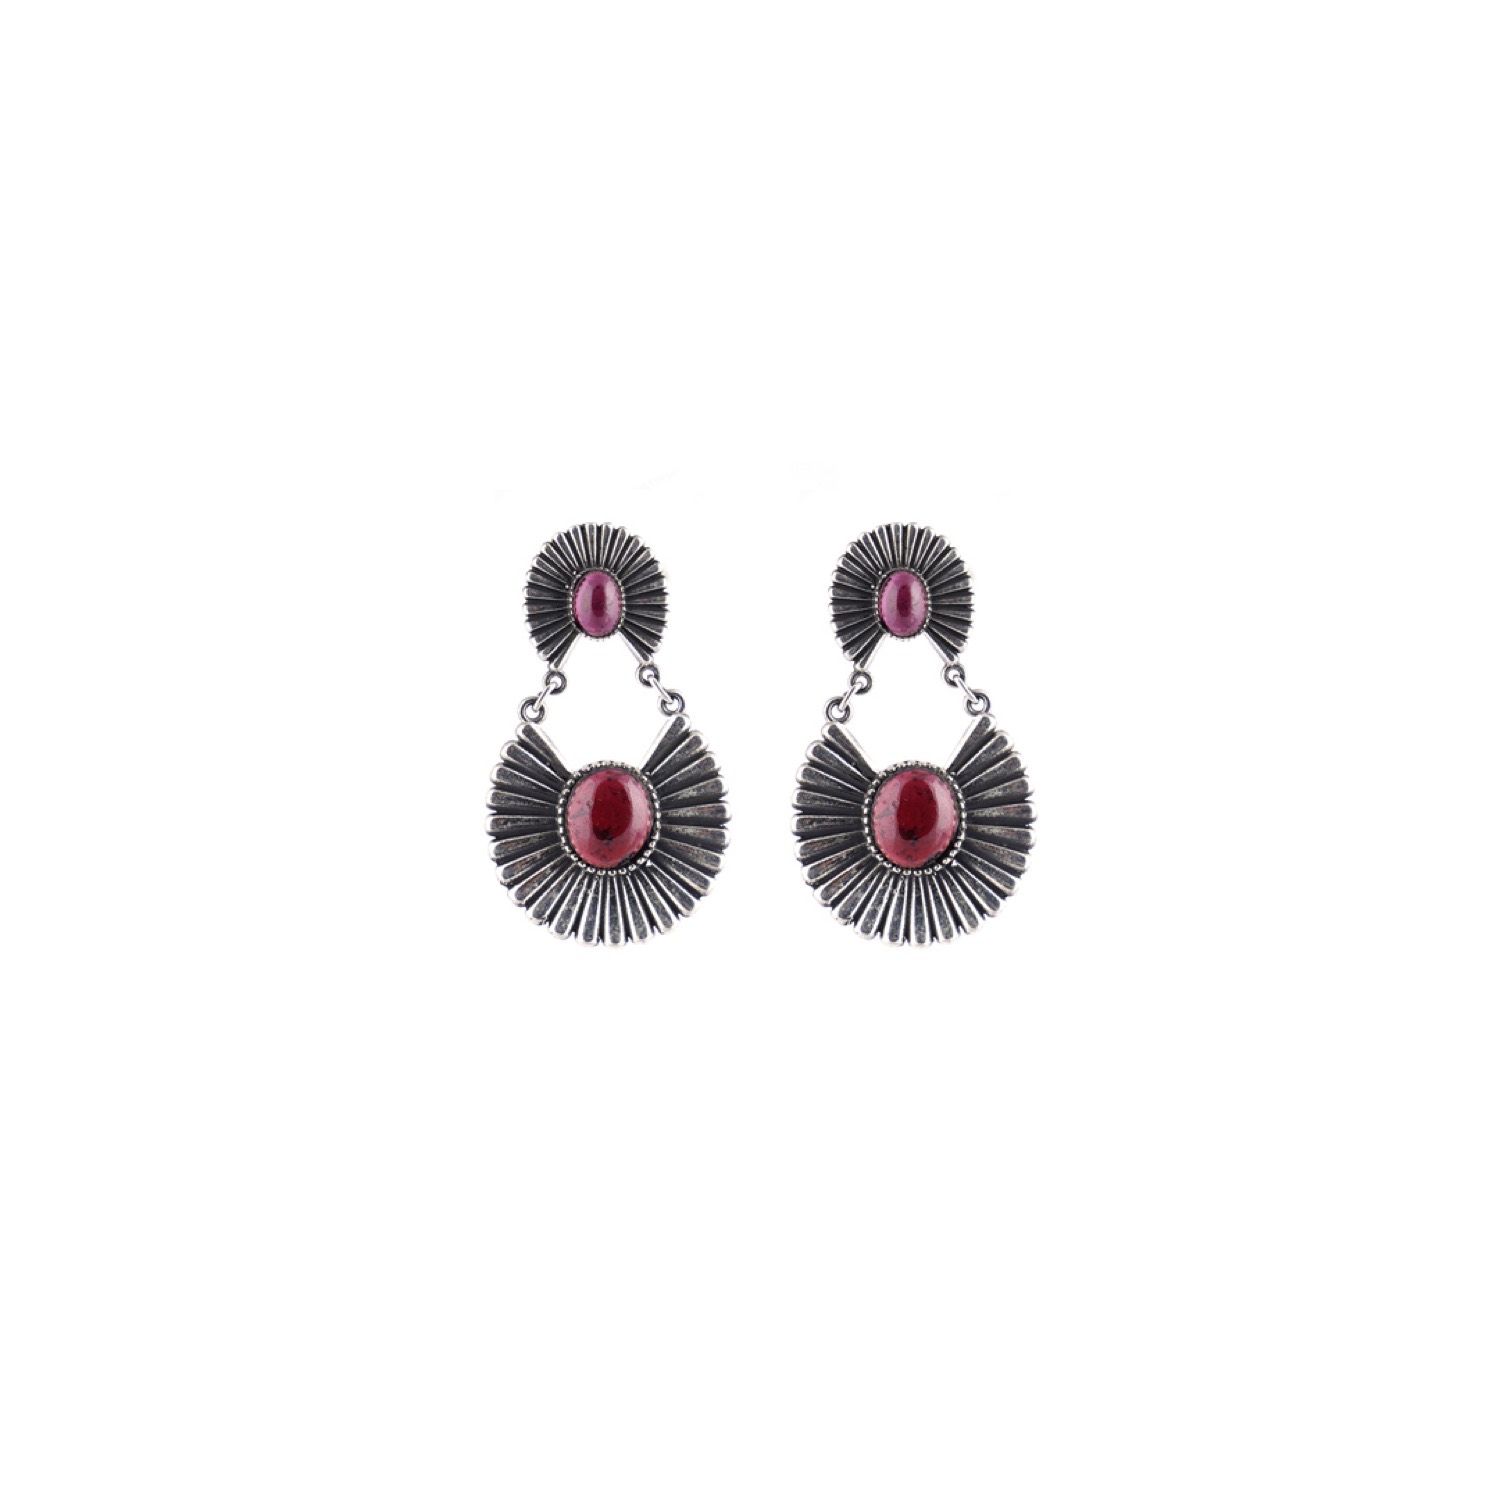 varam_earrings_102022_daisy_design_magenta_color_stone_dangler_silver_earrings-1